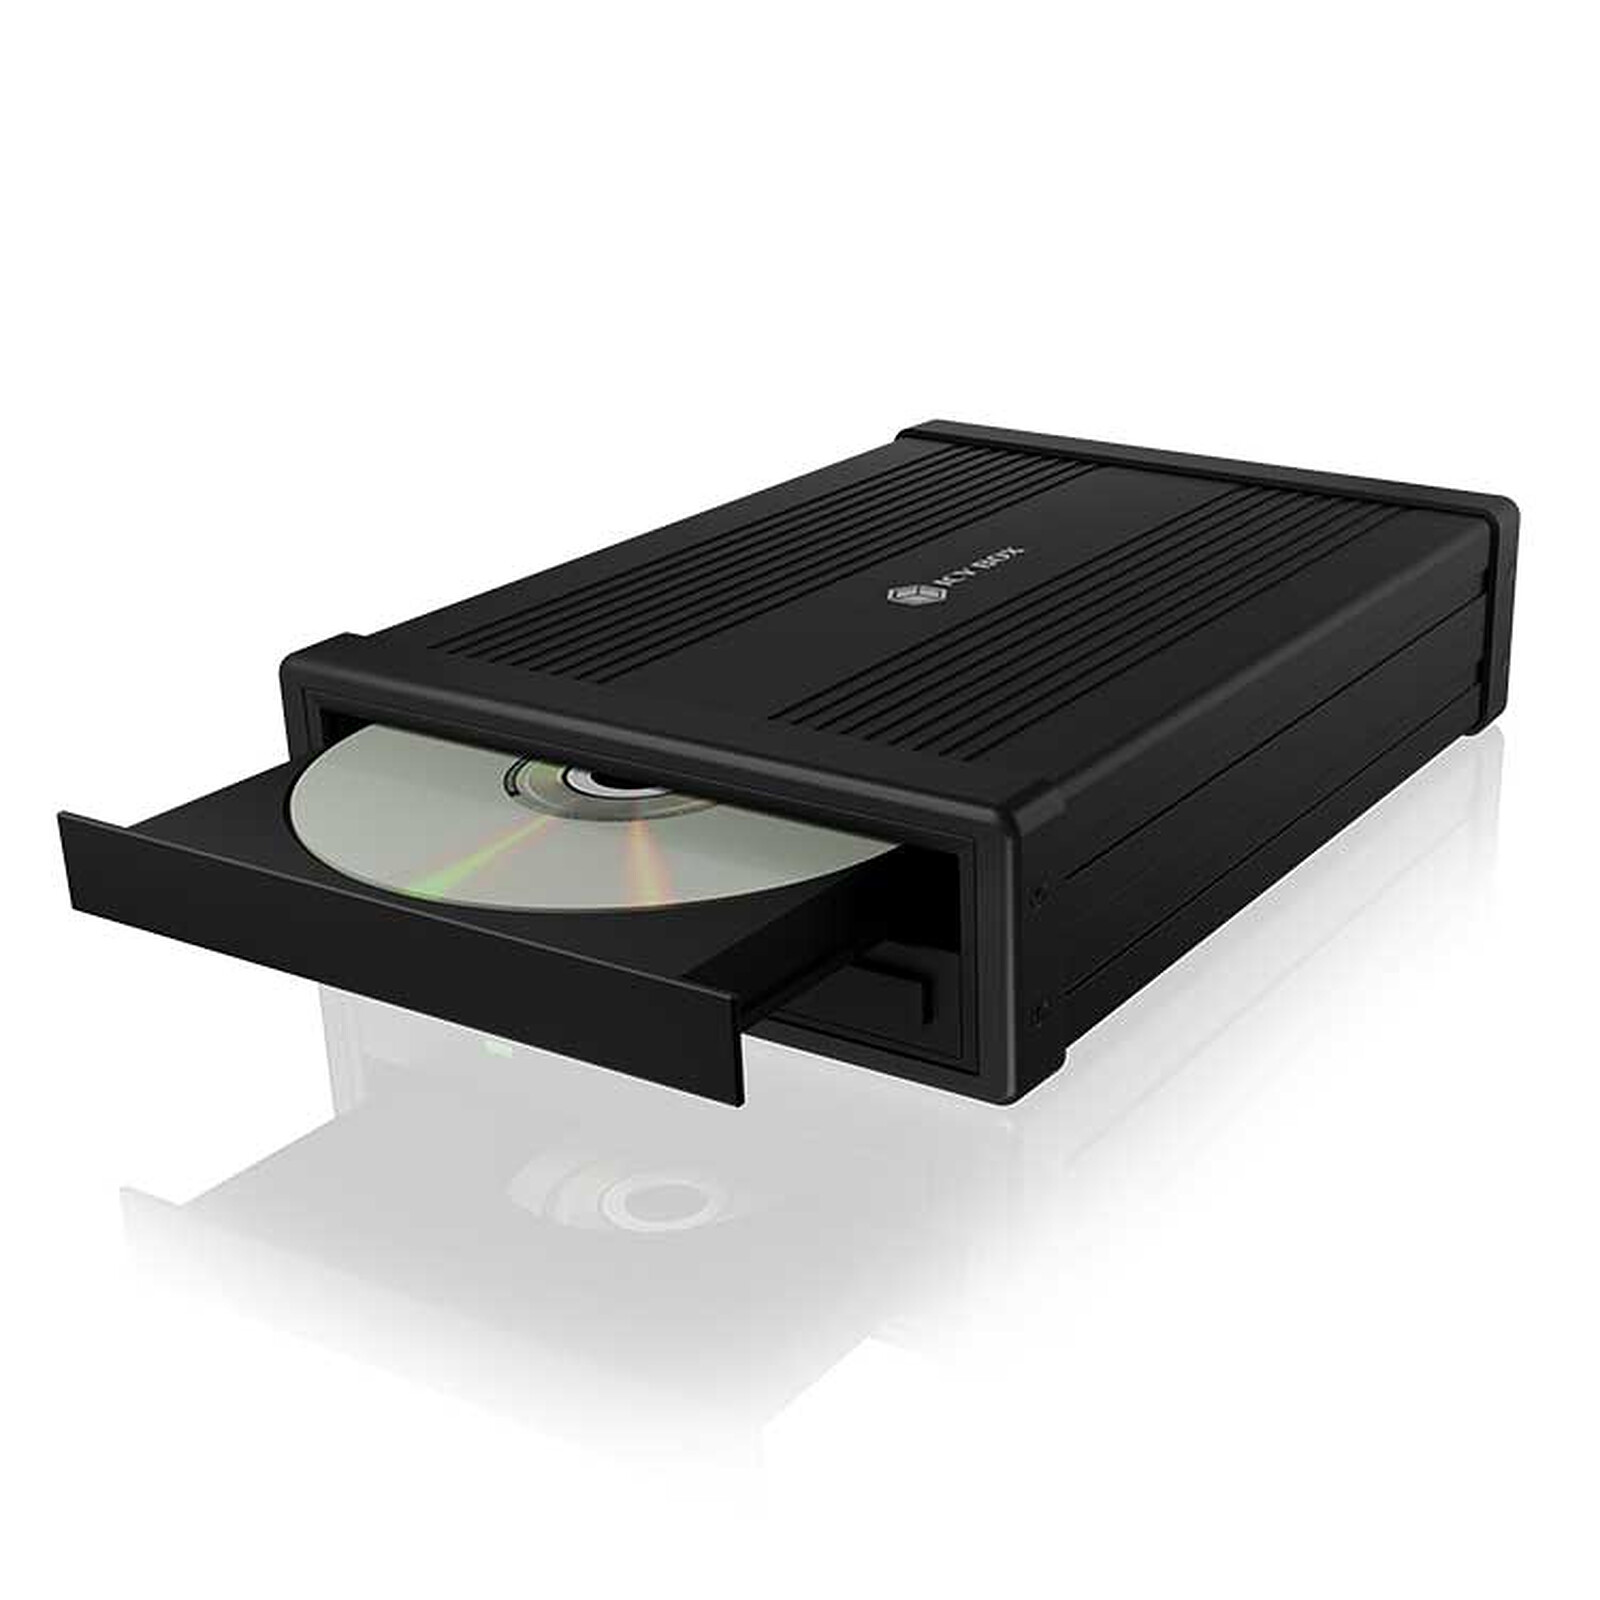 Acheter Nouveau lecteur de CD DVD Blu-ray externe USB 3.0 lecteur